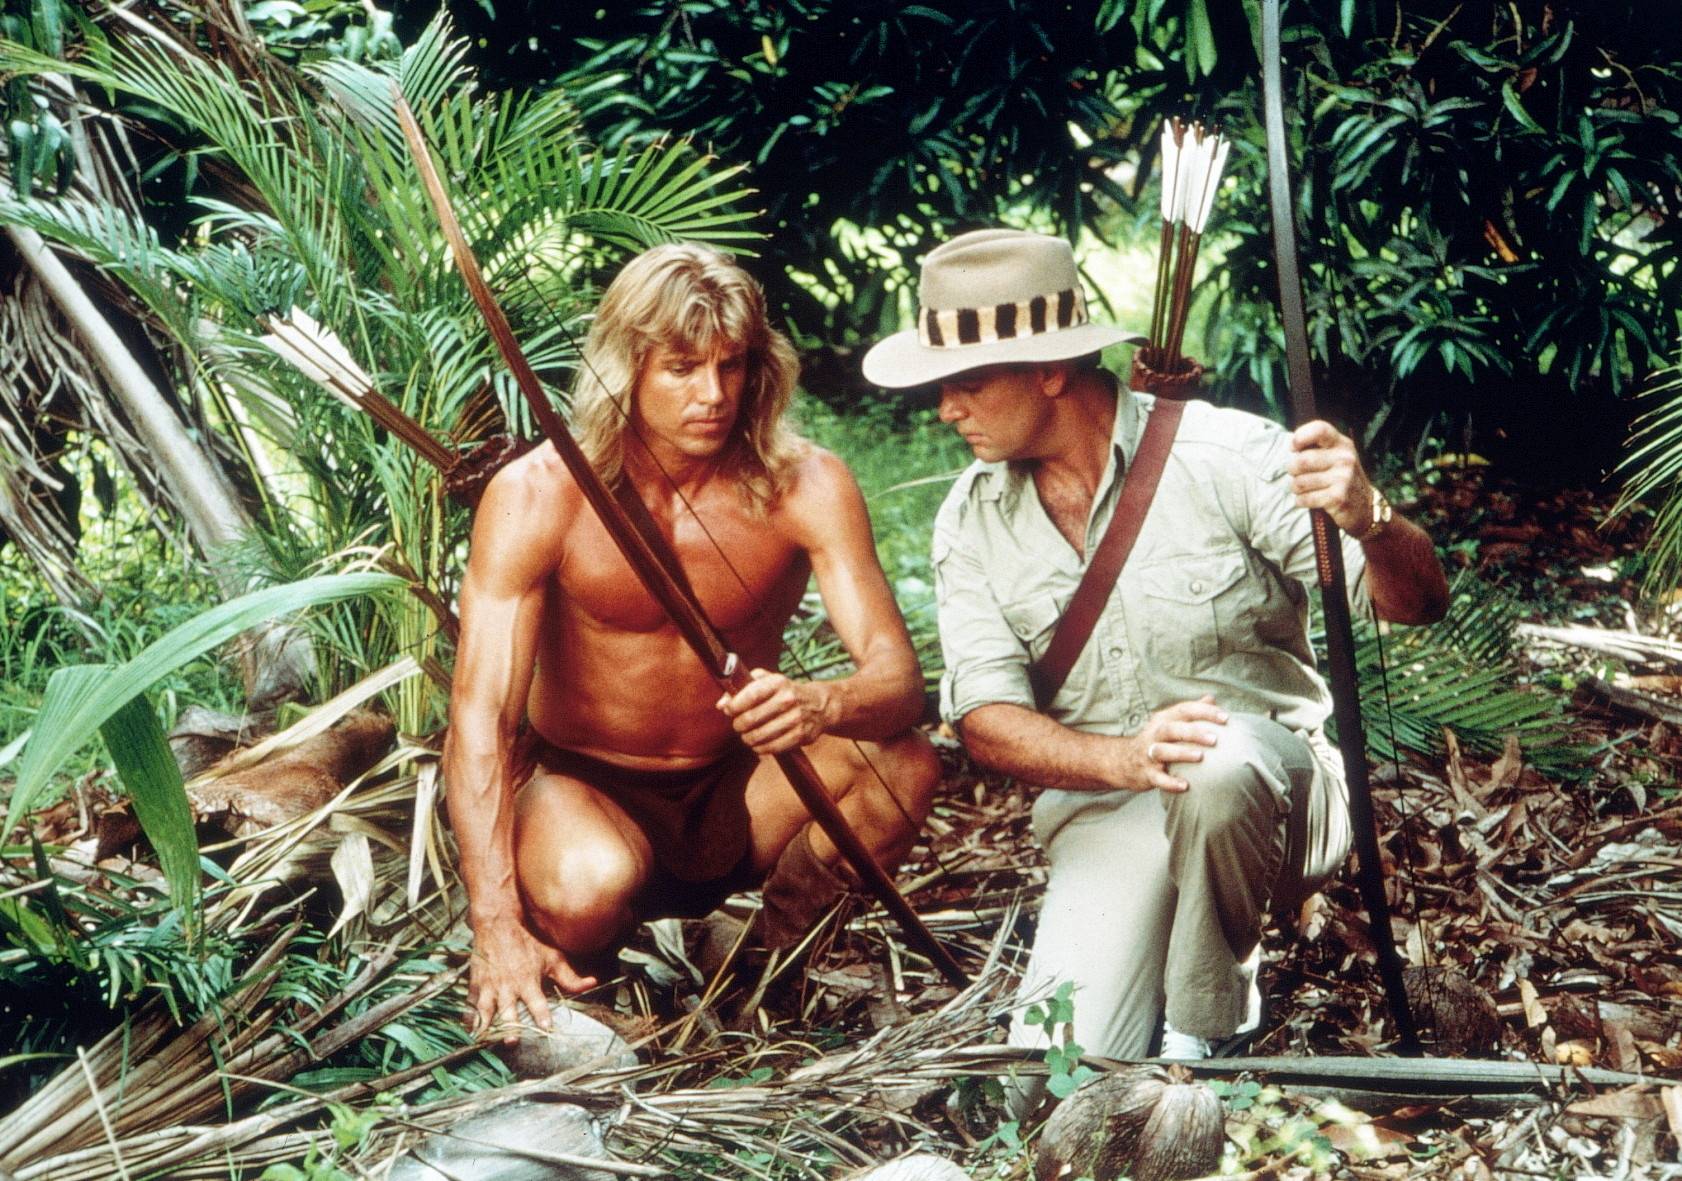 Tarzan - Die komplette Serie mit Wolf Larson (Alle 75 Folgen) (12 DVDs)